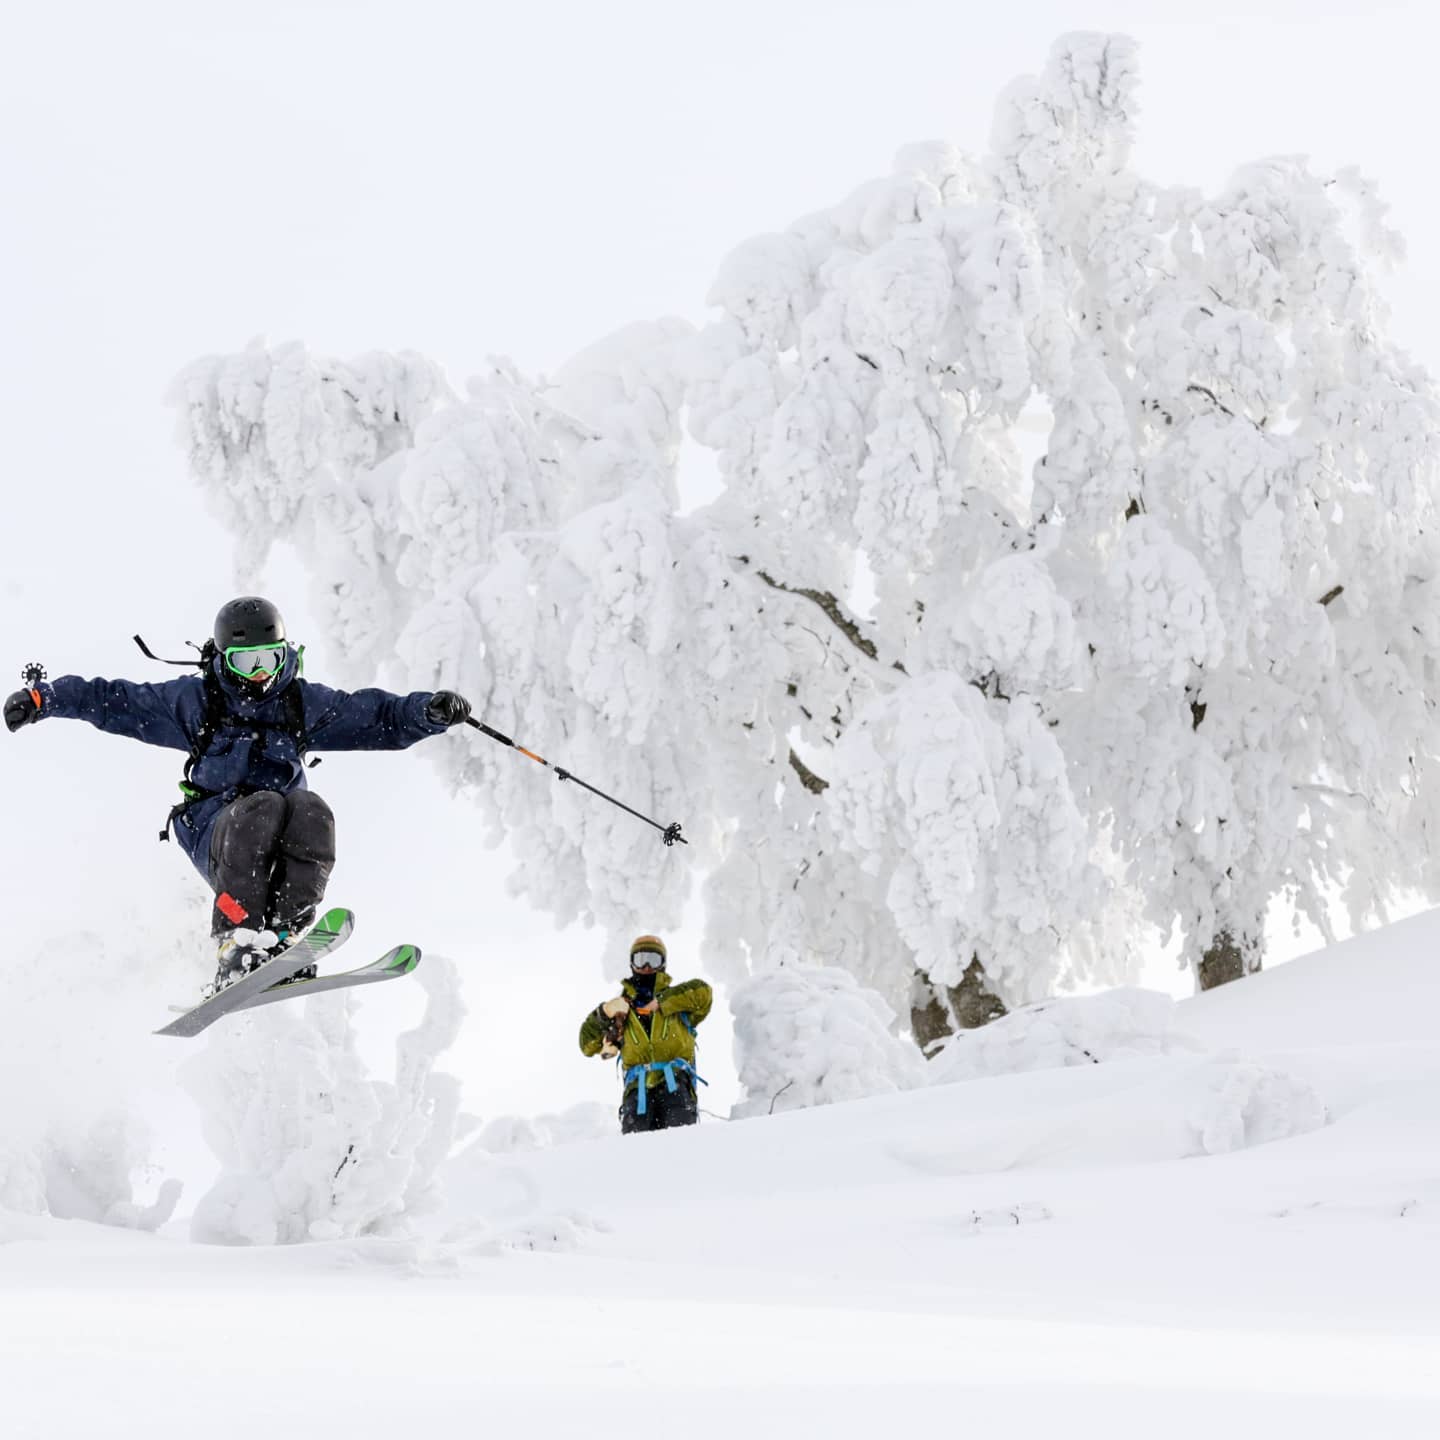 Japan Ski Resort Aomori Spring